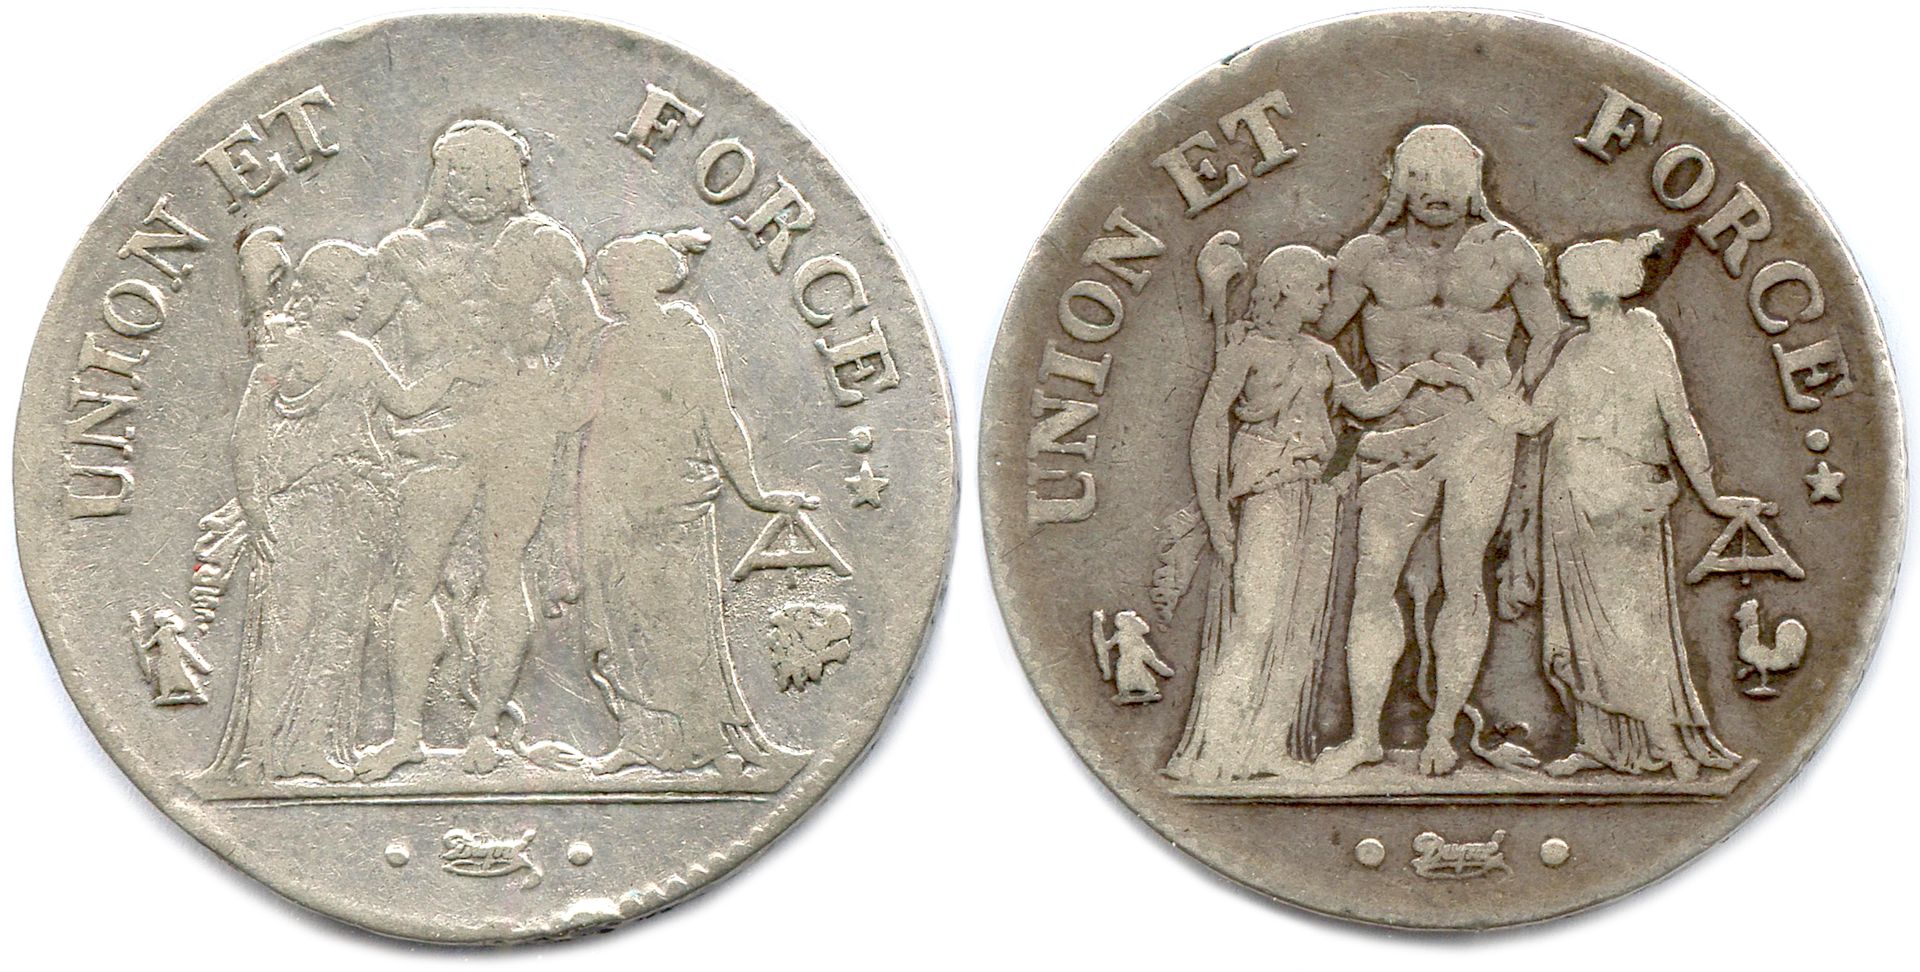 Null 目录 1795年10月23日-1799年11月10日

两枚硬币：5法郎海格力斯第7年（1797-1798）L=巴约纳，A=巴黎。

VG 800

&hellip;